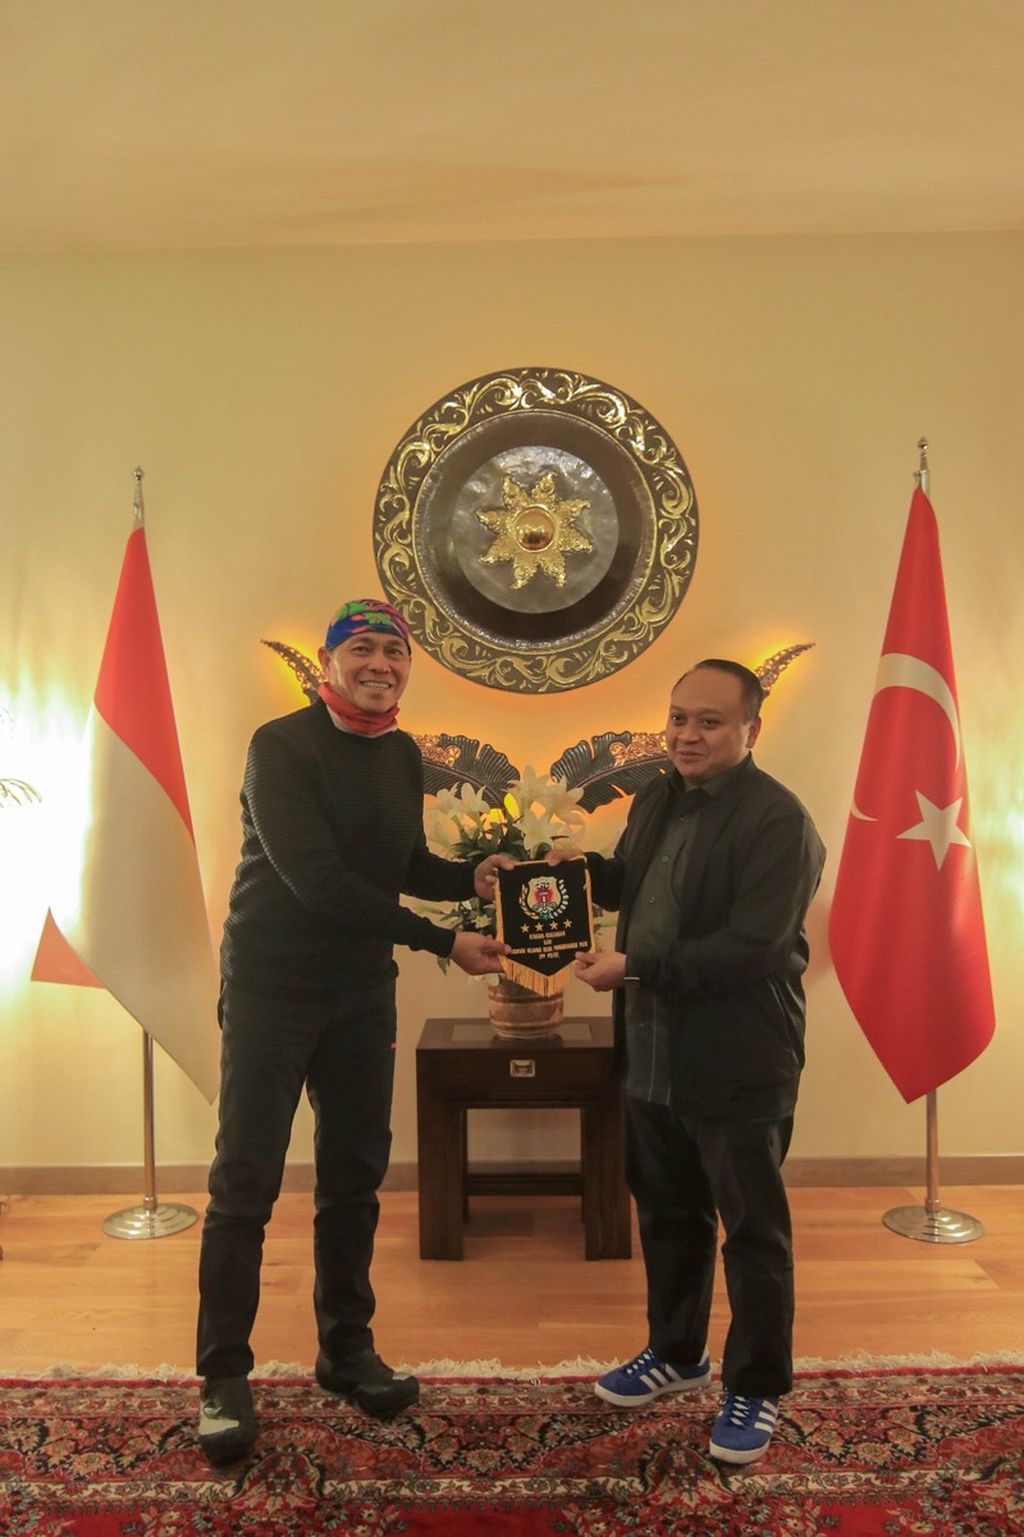 Pesepeda asal Indonesia yang melakukan perjalanan Jakarta-Paris, Royke Lumowa, berkunjung ke Kedutaan Besar Republik Indonesia di Ankara.